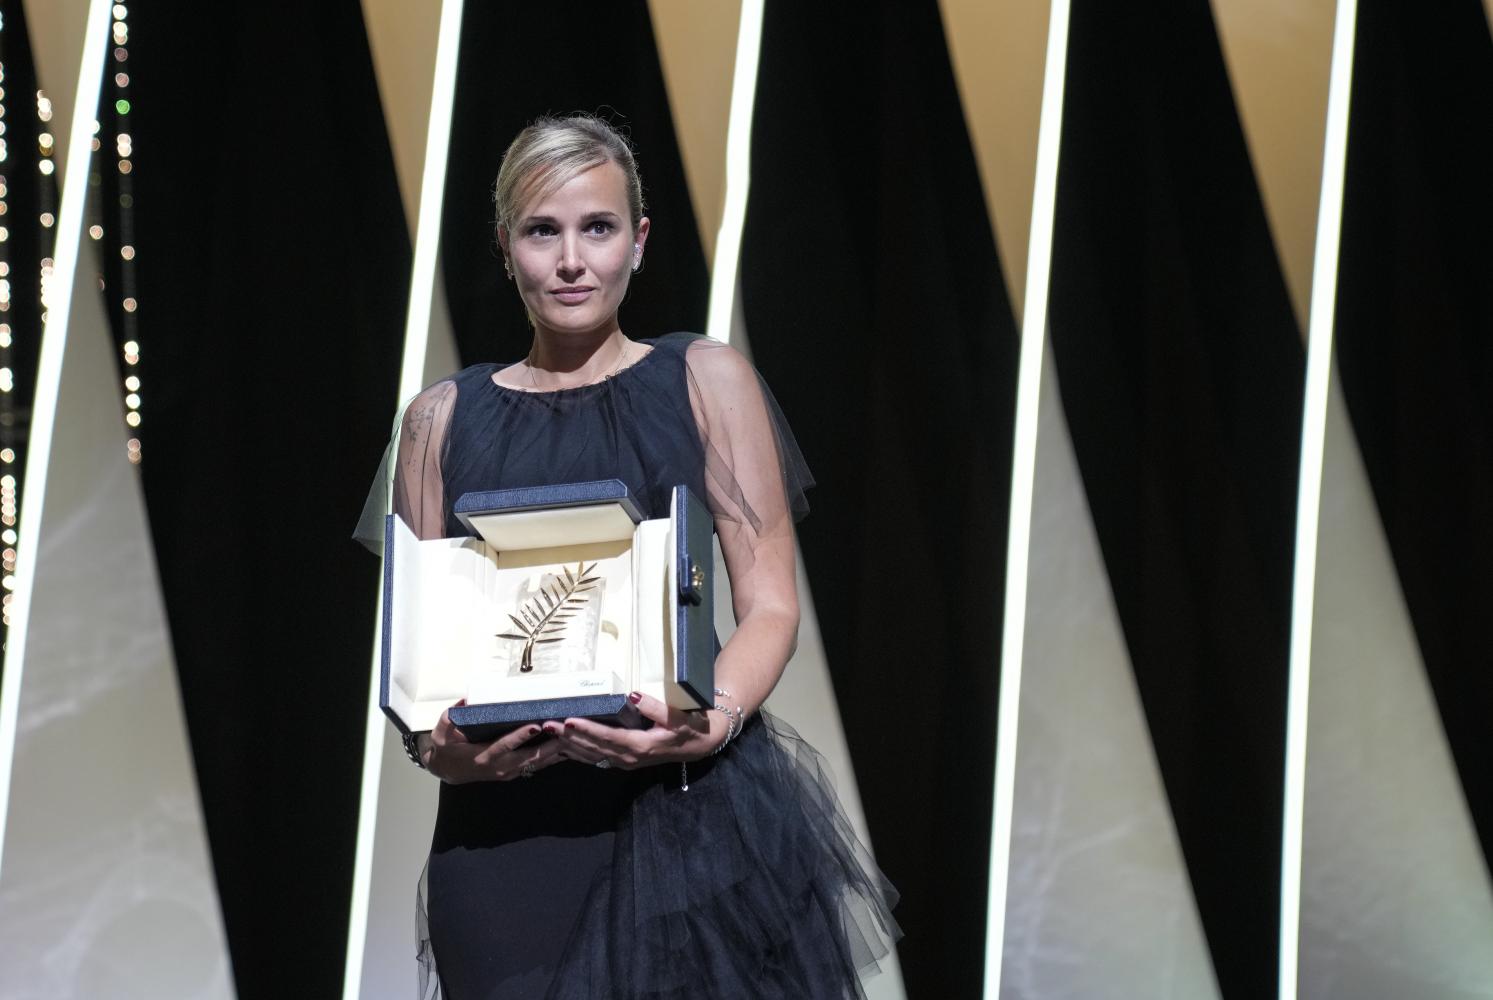 Regisseurin Julia Ducournau hält die Goldene Palme für den Film "Titane"